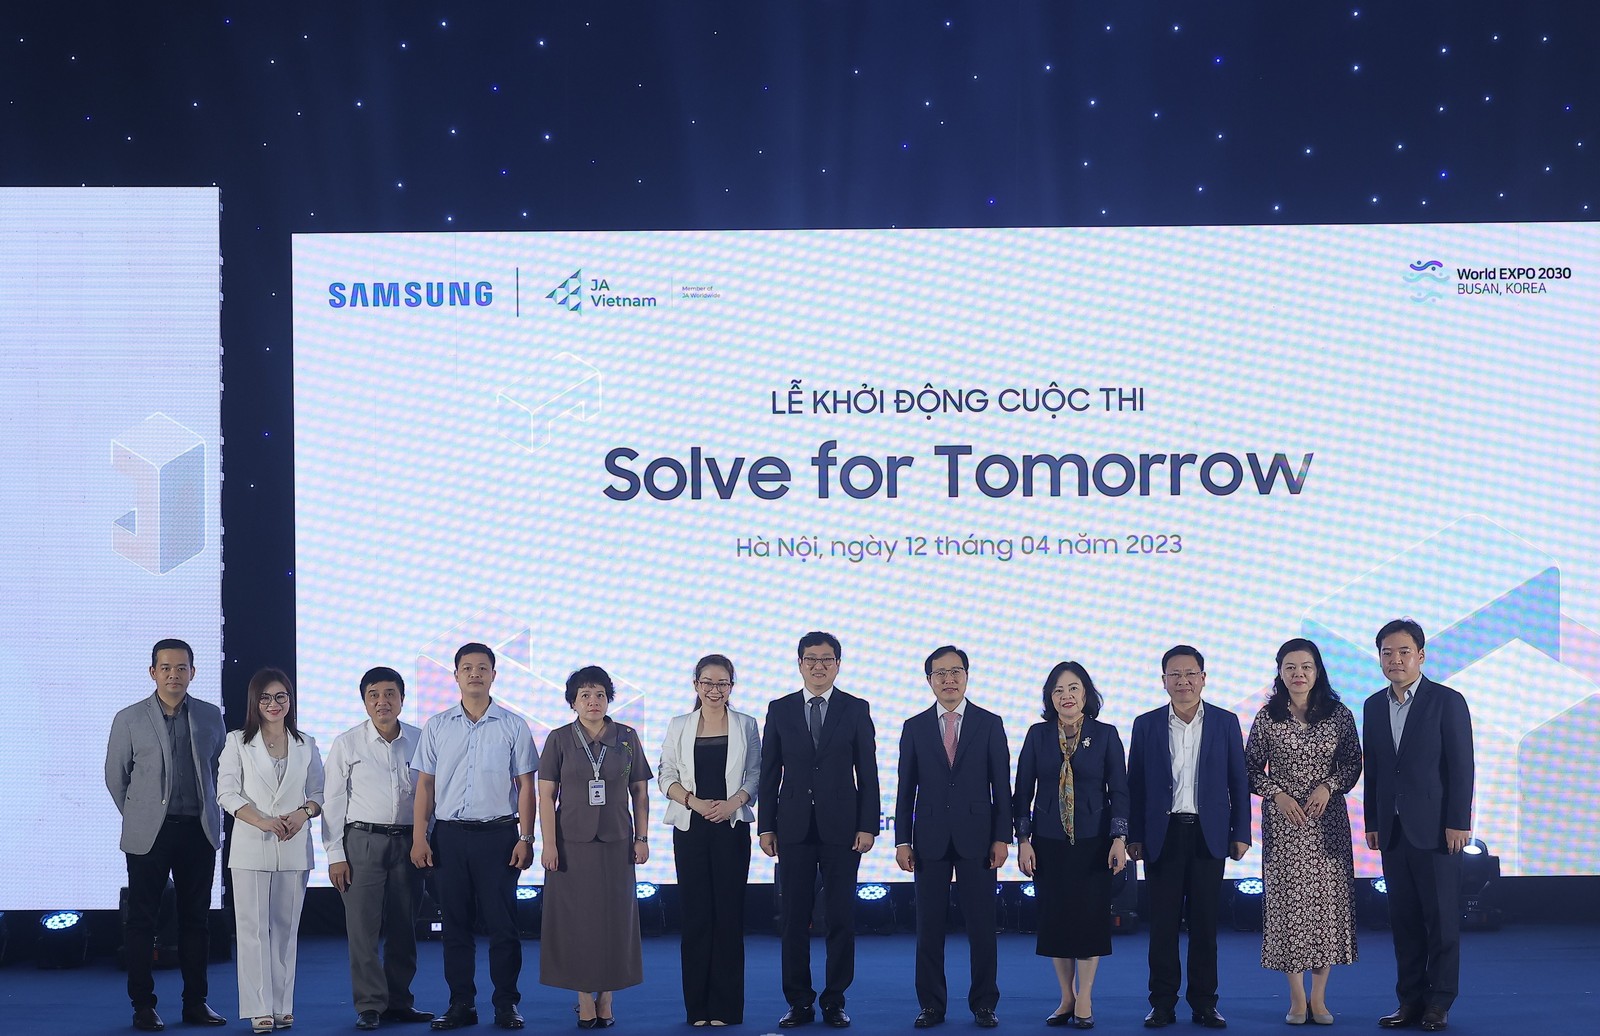 Samsung khởi động Solve for Tomorrow với giải thưởng lên tới 8 tỷ đồng